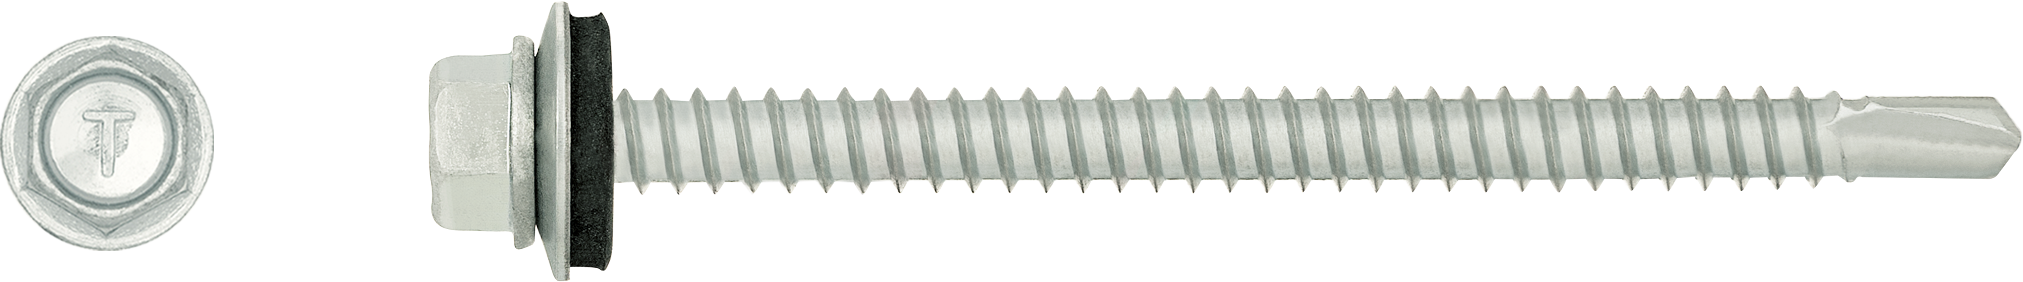 Șurub autoforant cu / fără șaibă pentru fixarea tablei metalice pe structuri și cadre din oțel (perforare până la 3, 6 sau 8 mm)